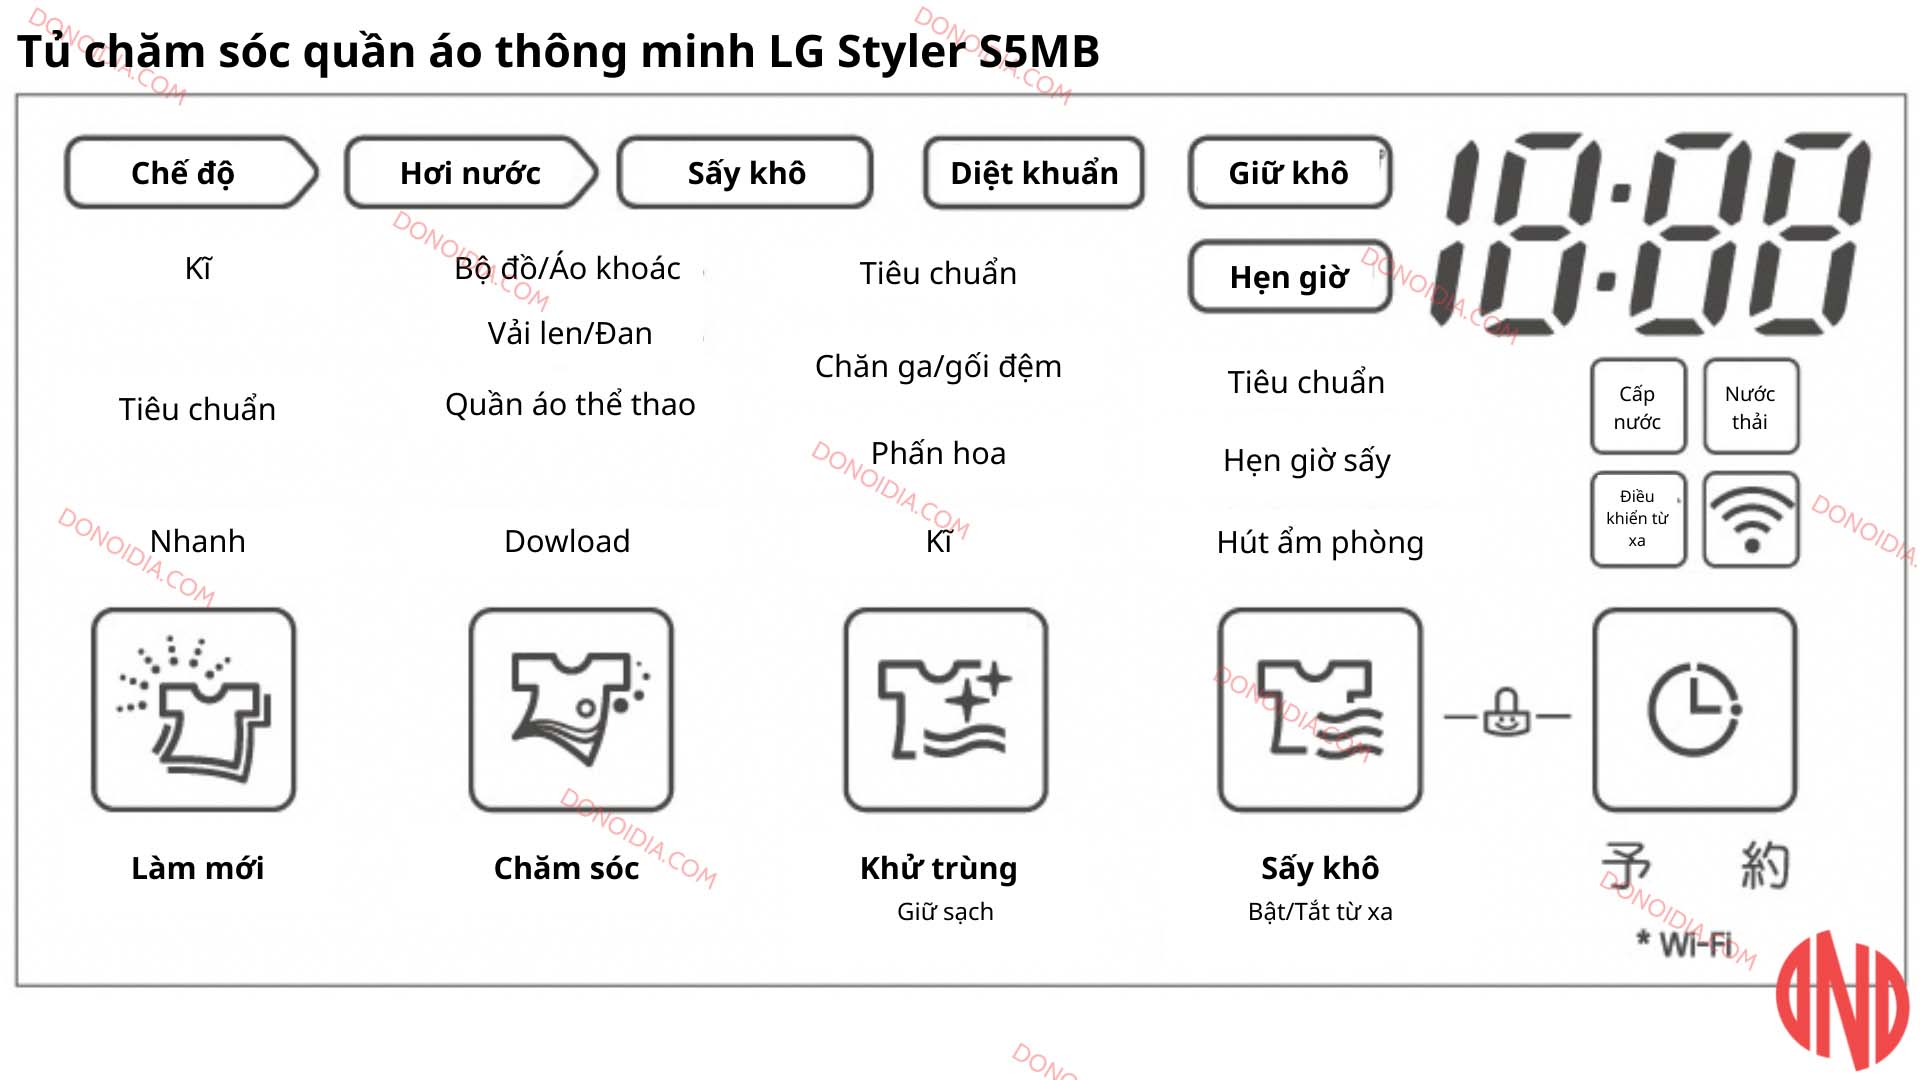 Hướng dẫn sử dụng tủ chăm sóc quần áo thông minh LG Styler S5MB